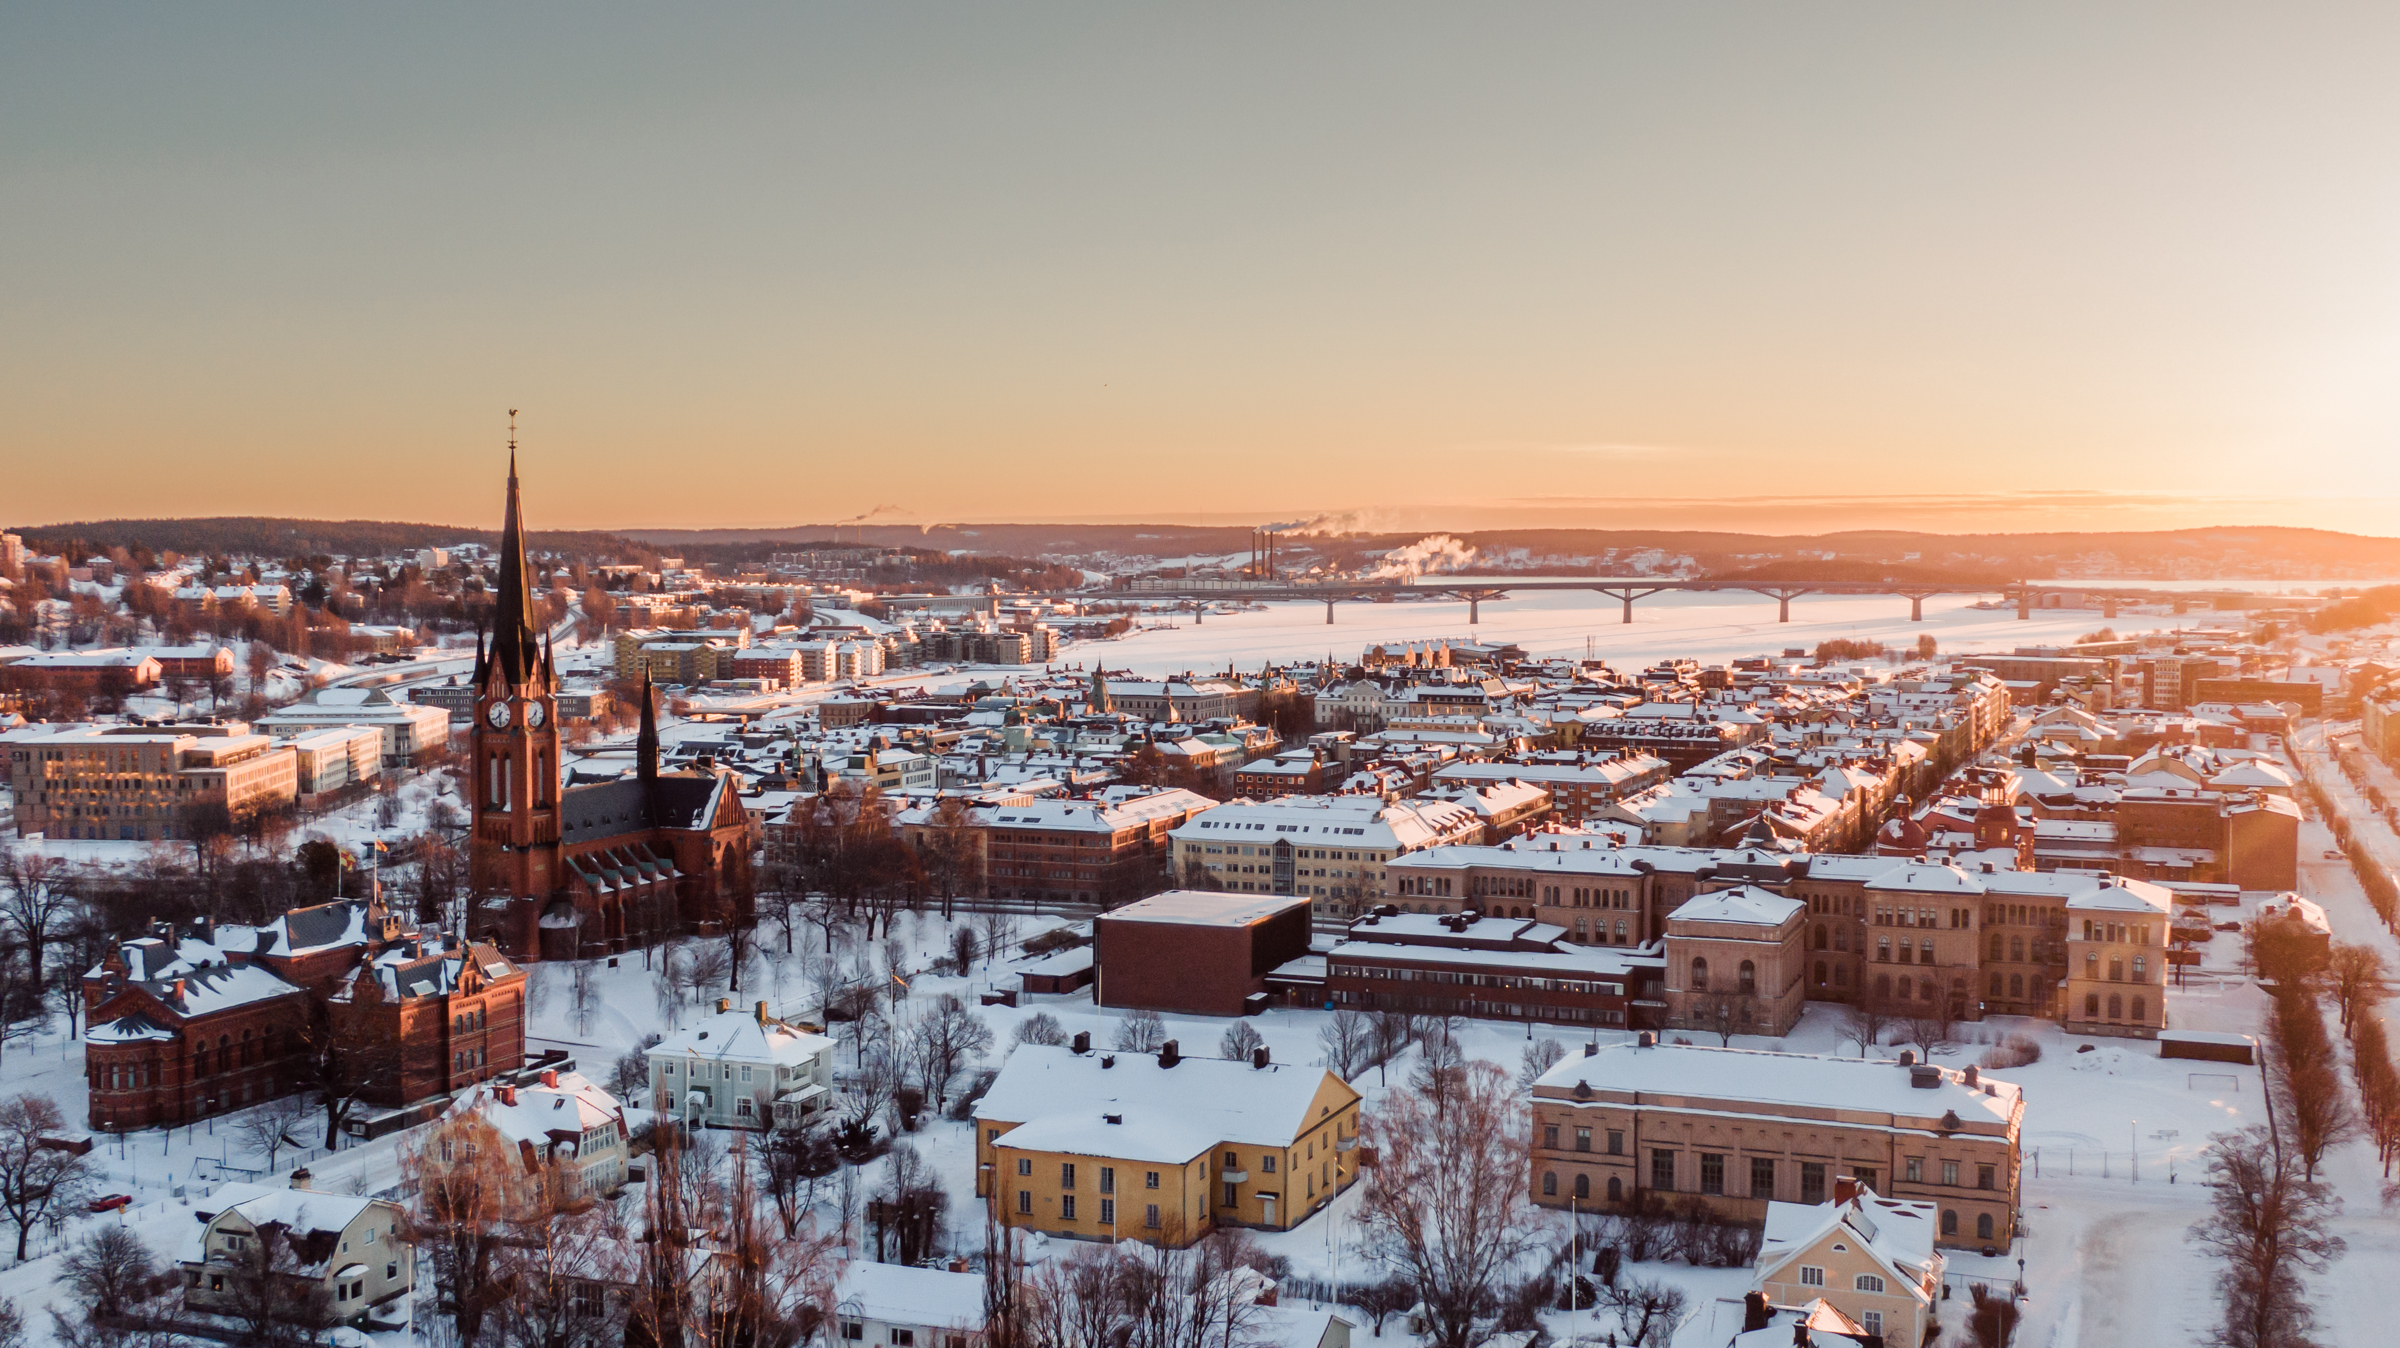 Drönarbild över Sundsvall. Staden är täckt av snö.